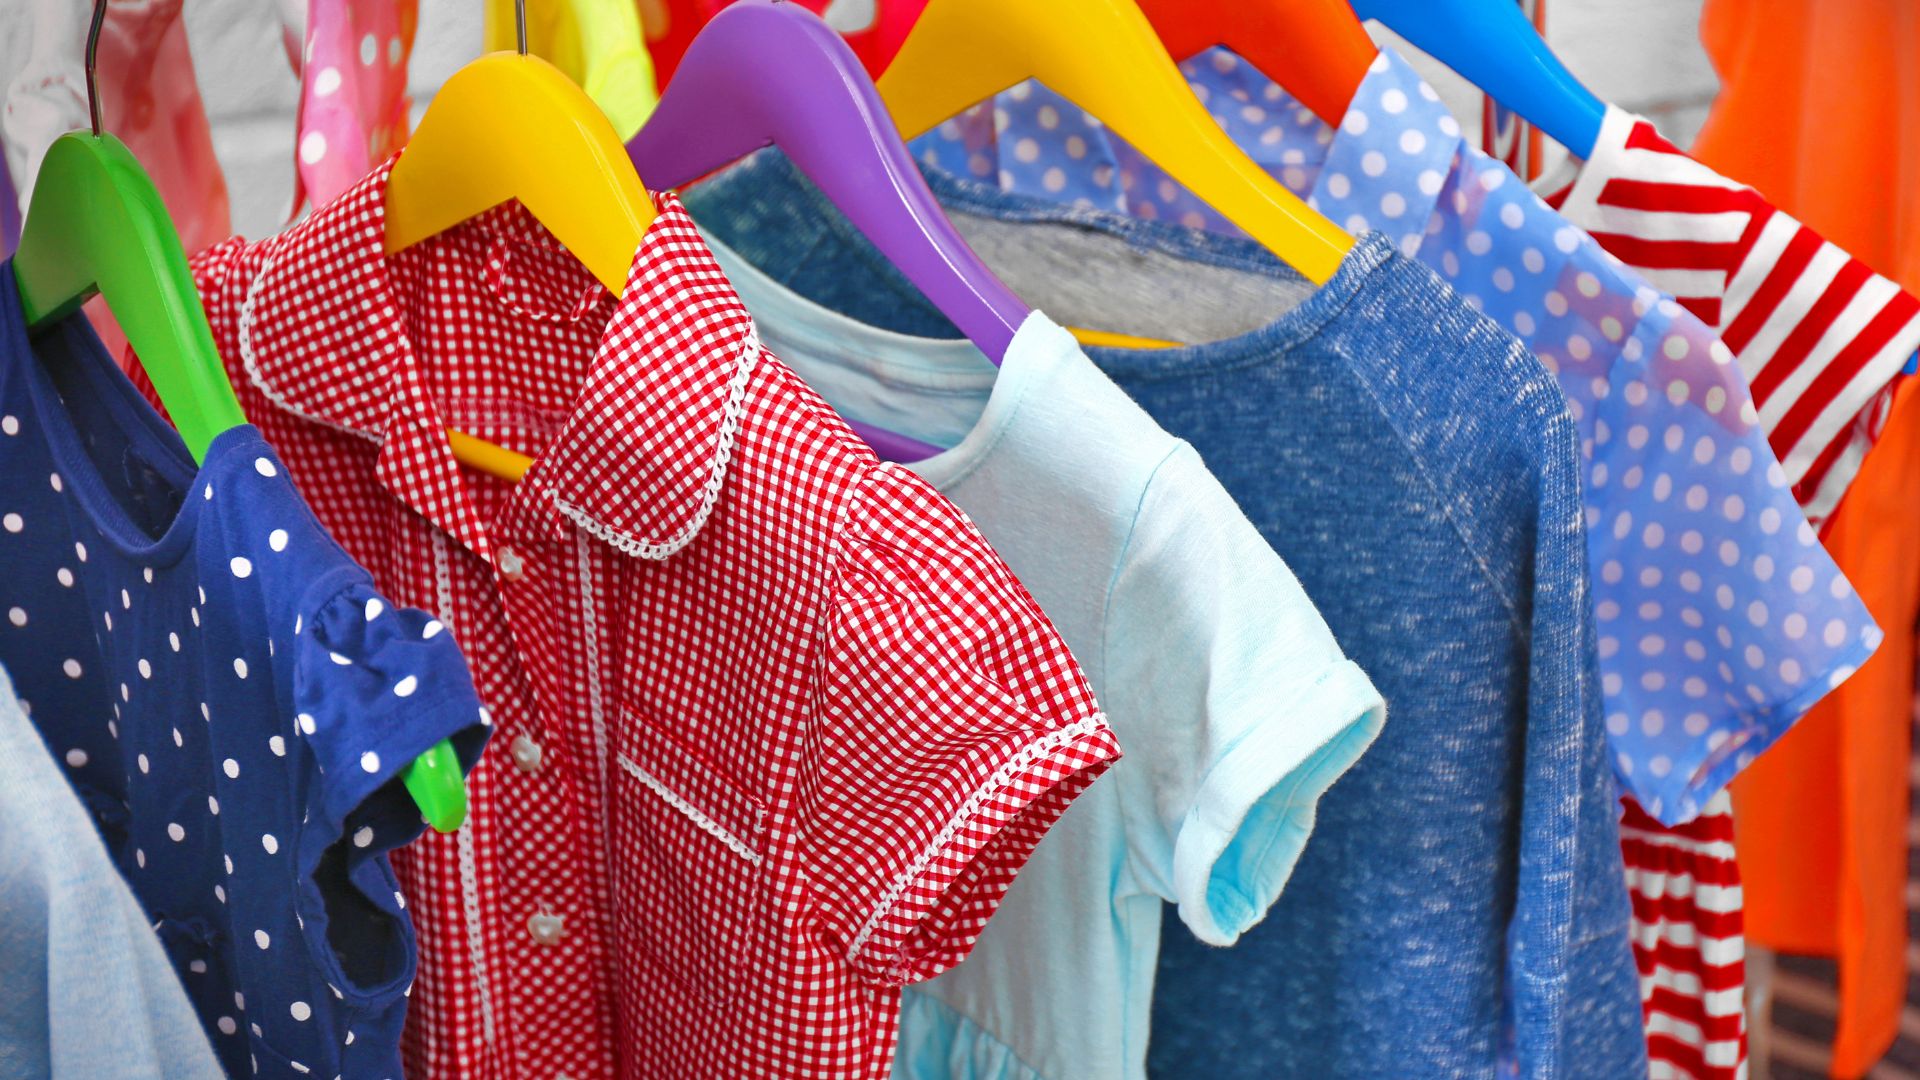 auf bunten Plastikbügeln hängen hintereinander verschiedenfarbige kurzärmelige Kinderhemden.